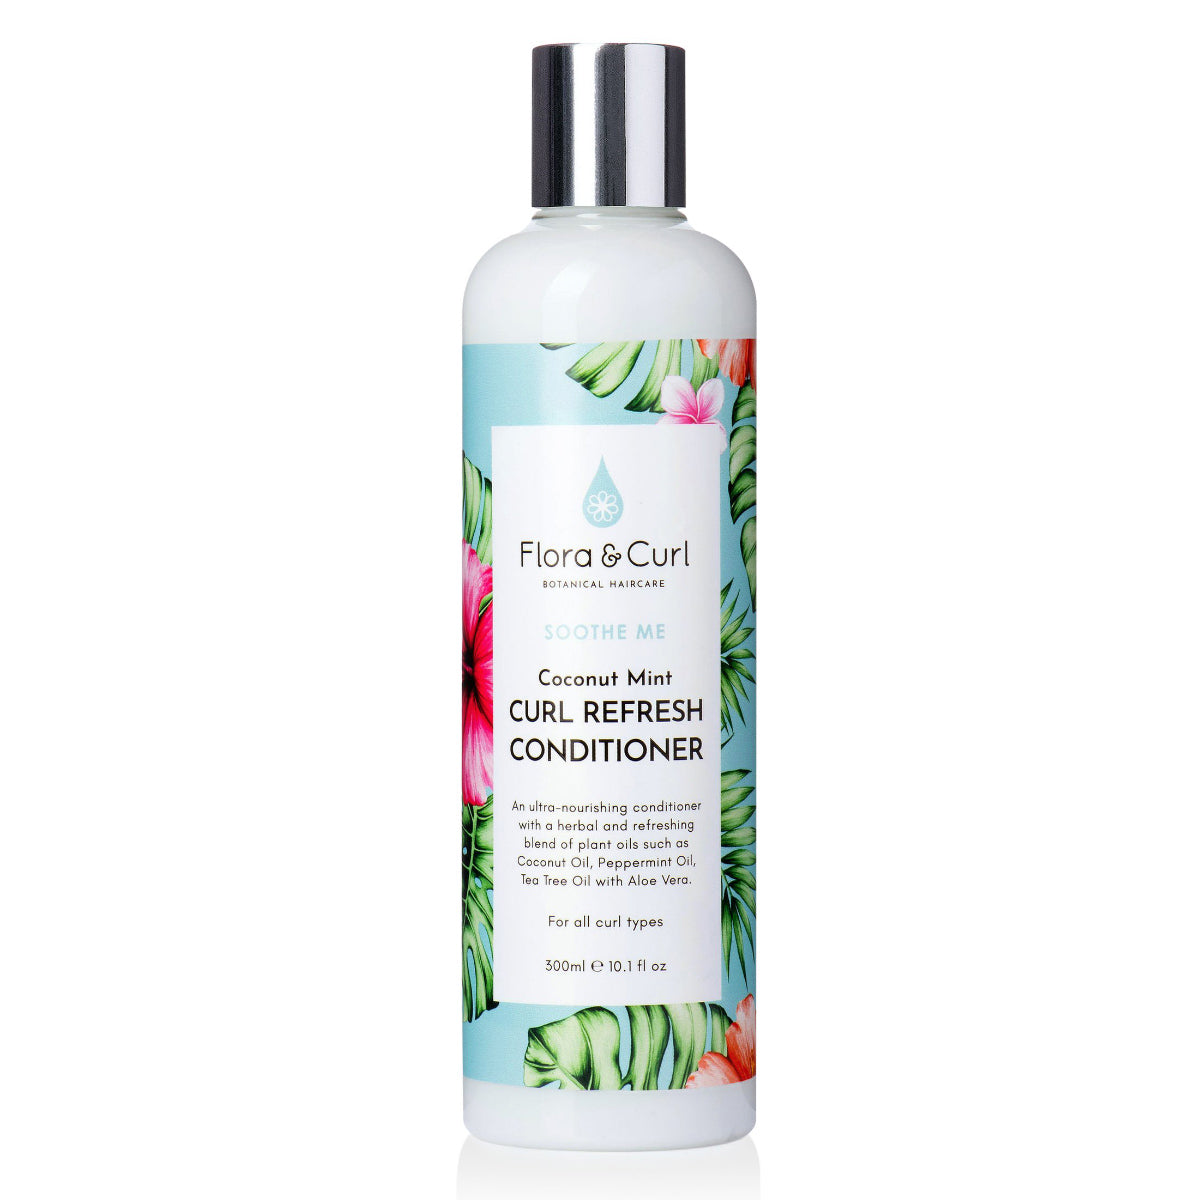 L'après-shampoing Coconut Mint Curl Refresh Conditioner de Flora & Curl garde votre cuir chevelu en pleine forme tout en réduisant la fatigue hydrale de vos cheveux.